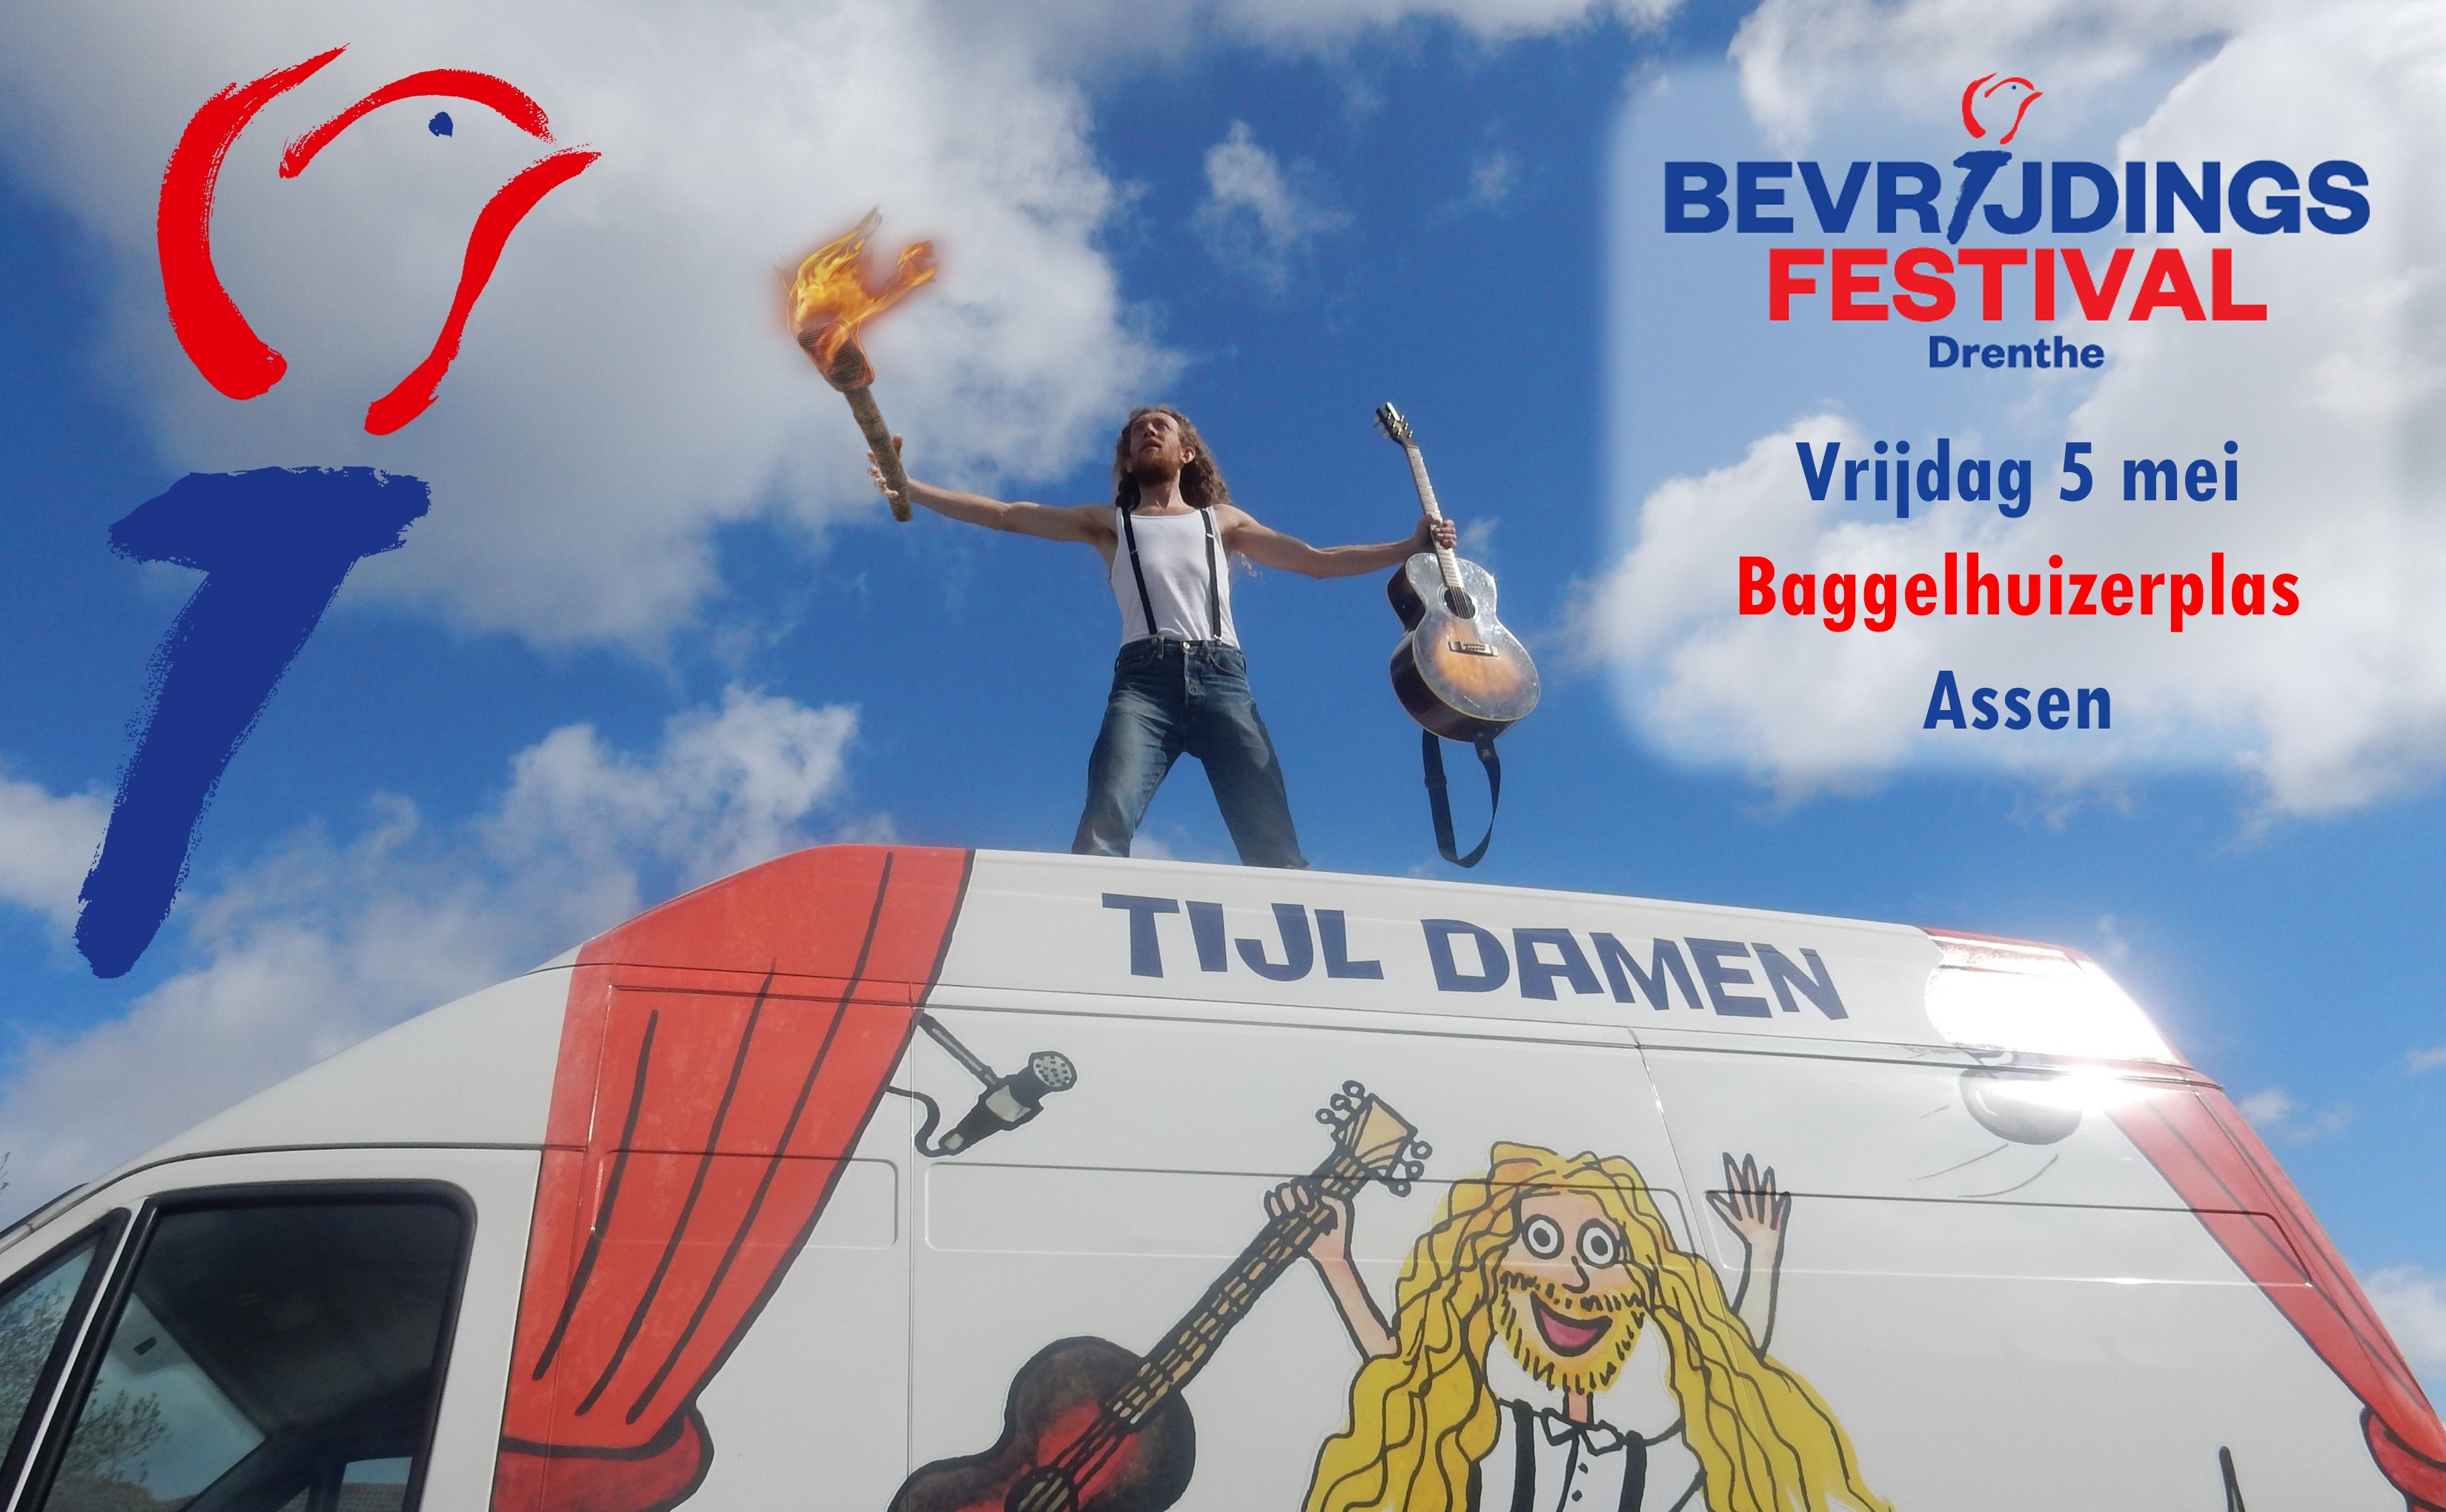 Tijl Damen speelt op het Bevrijdingsfestival Drenthe